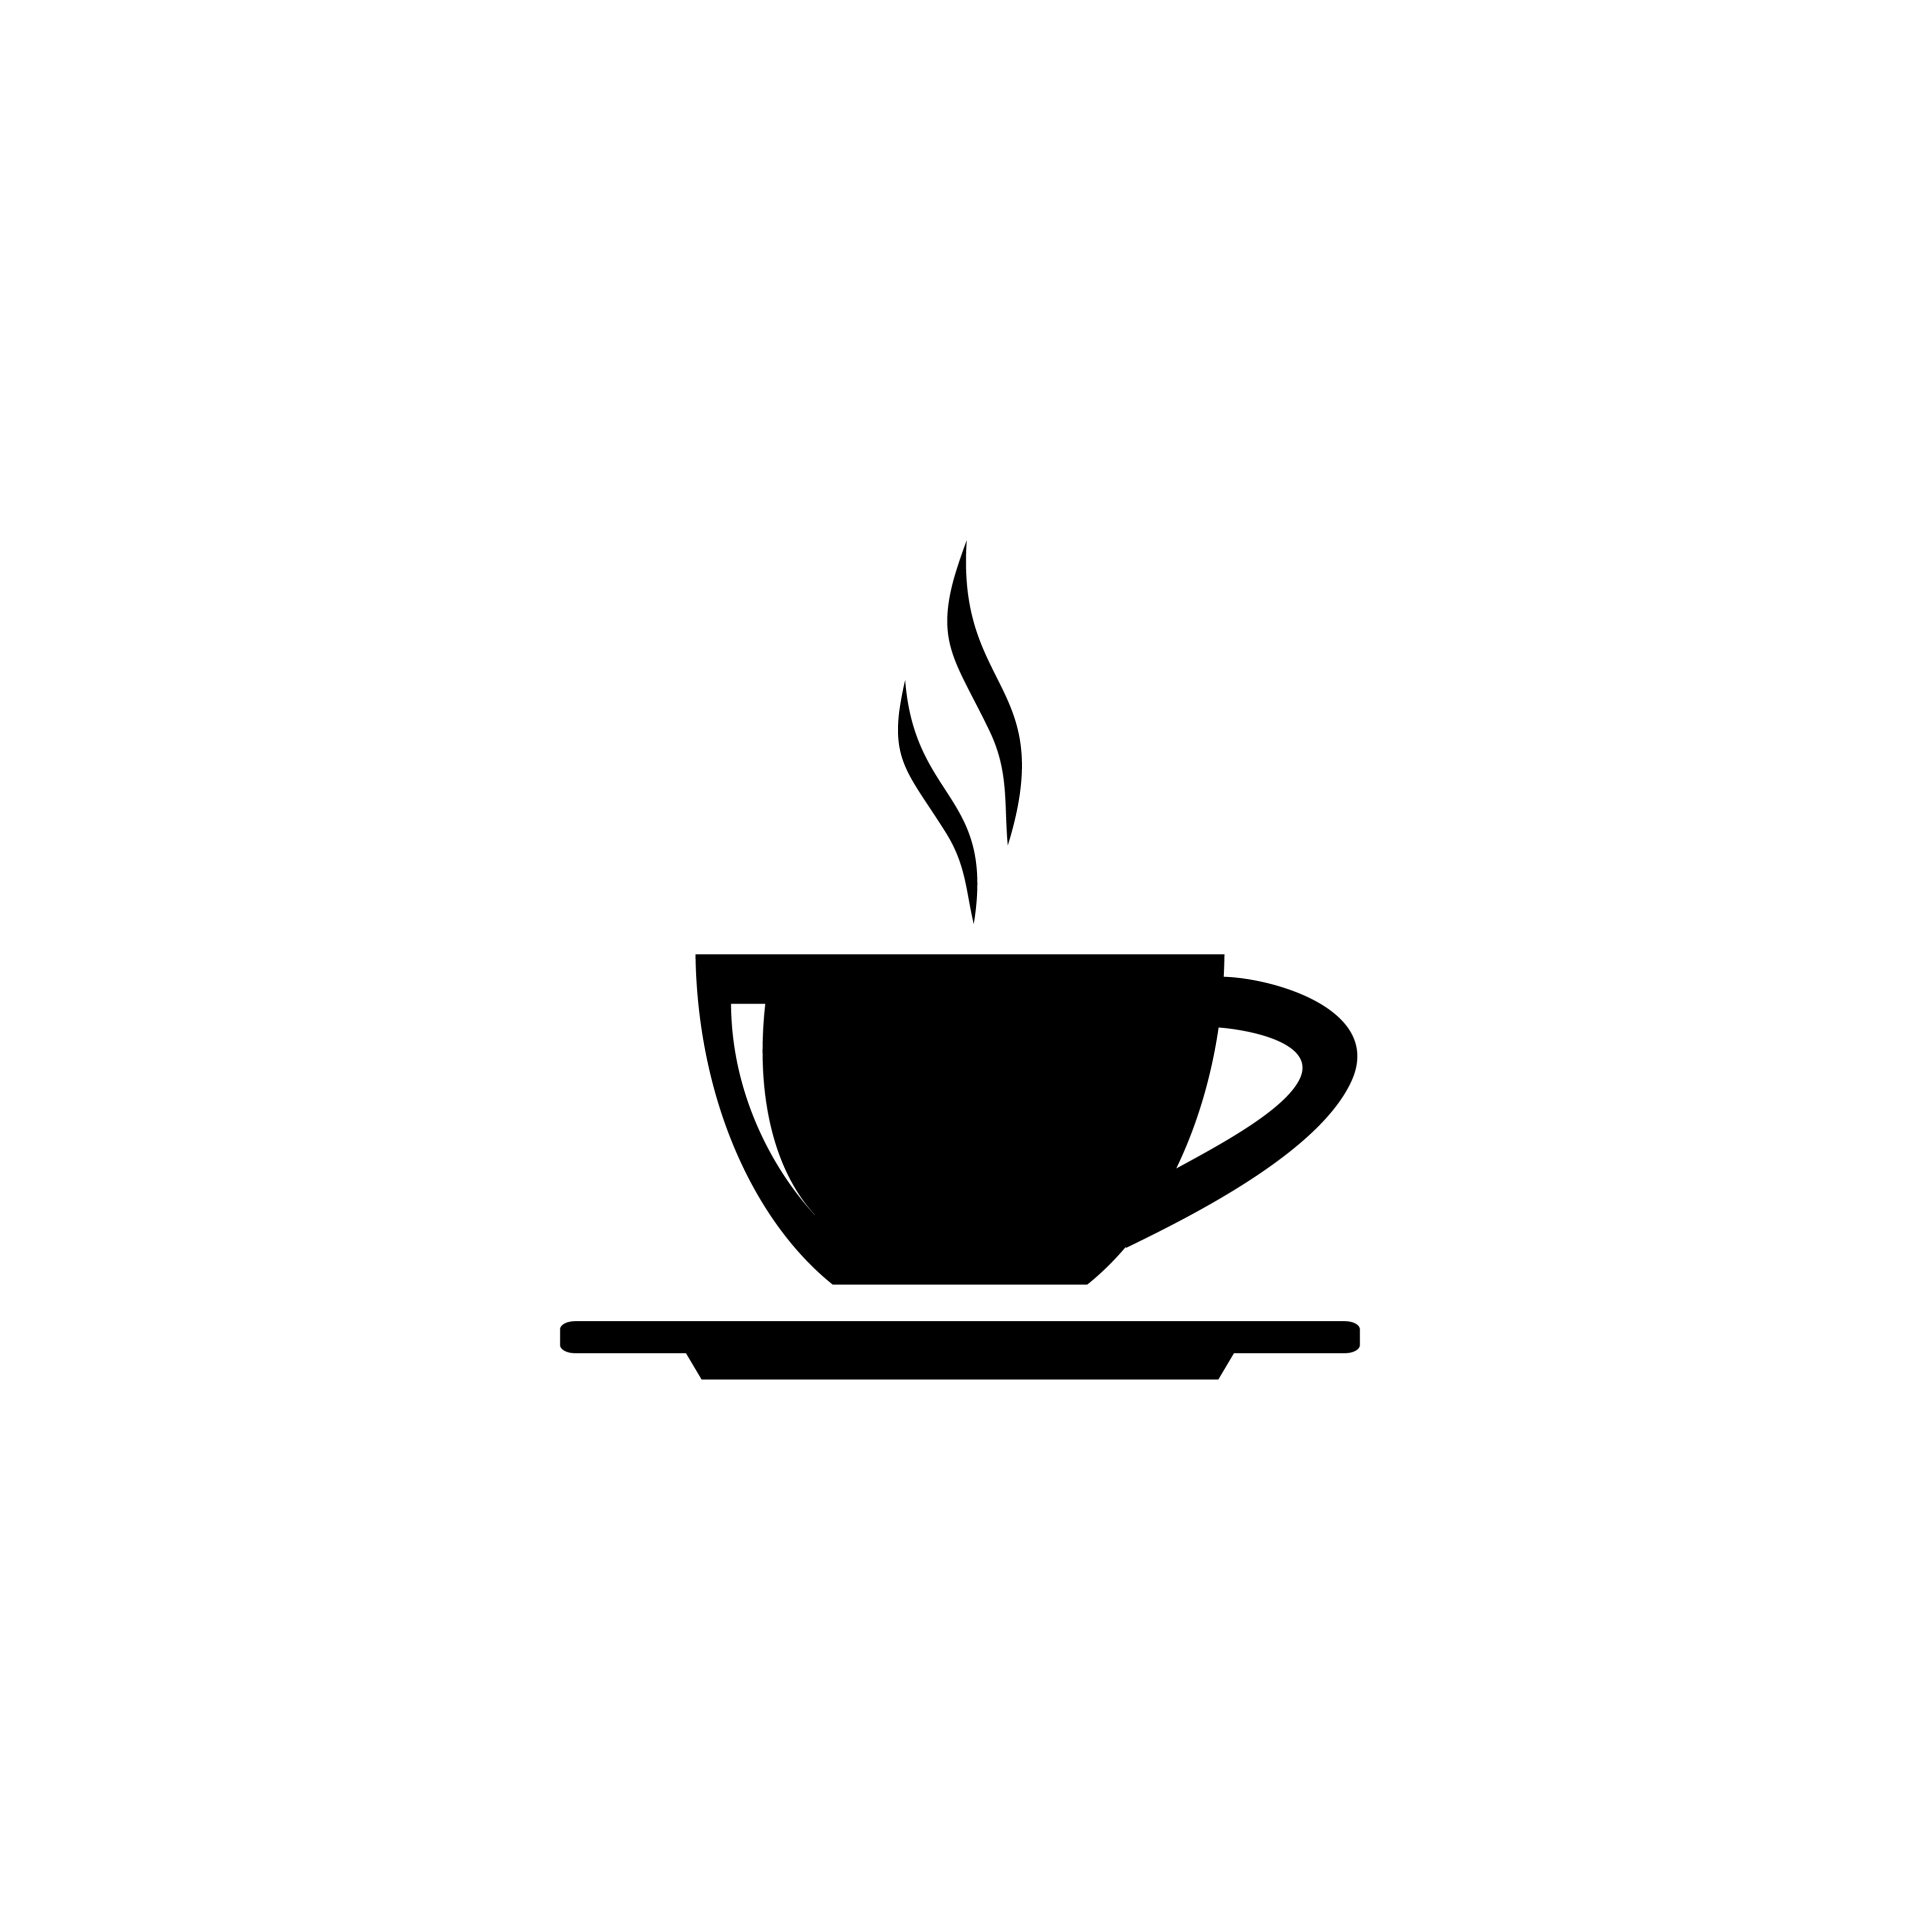 PTSS Voorbij-Effectief-Integraal-Holistisch herstel van PTSS en trauma-Johan Reinhoudt-Koffiekop-Logo